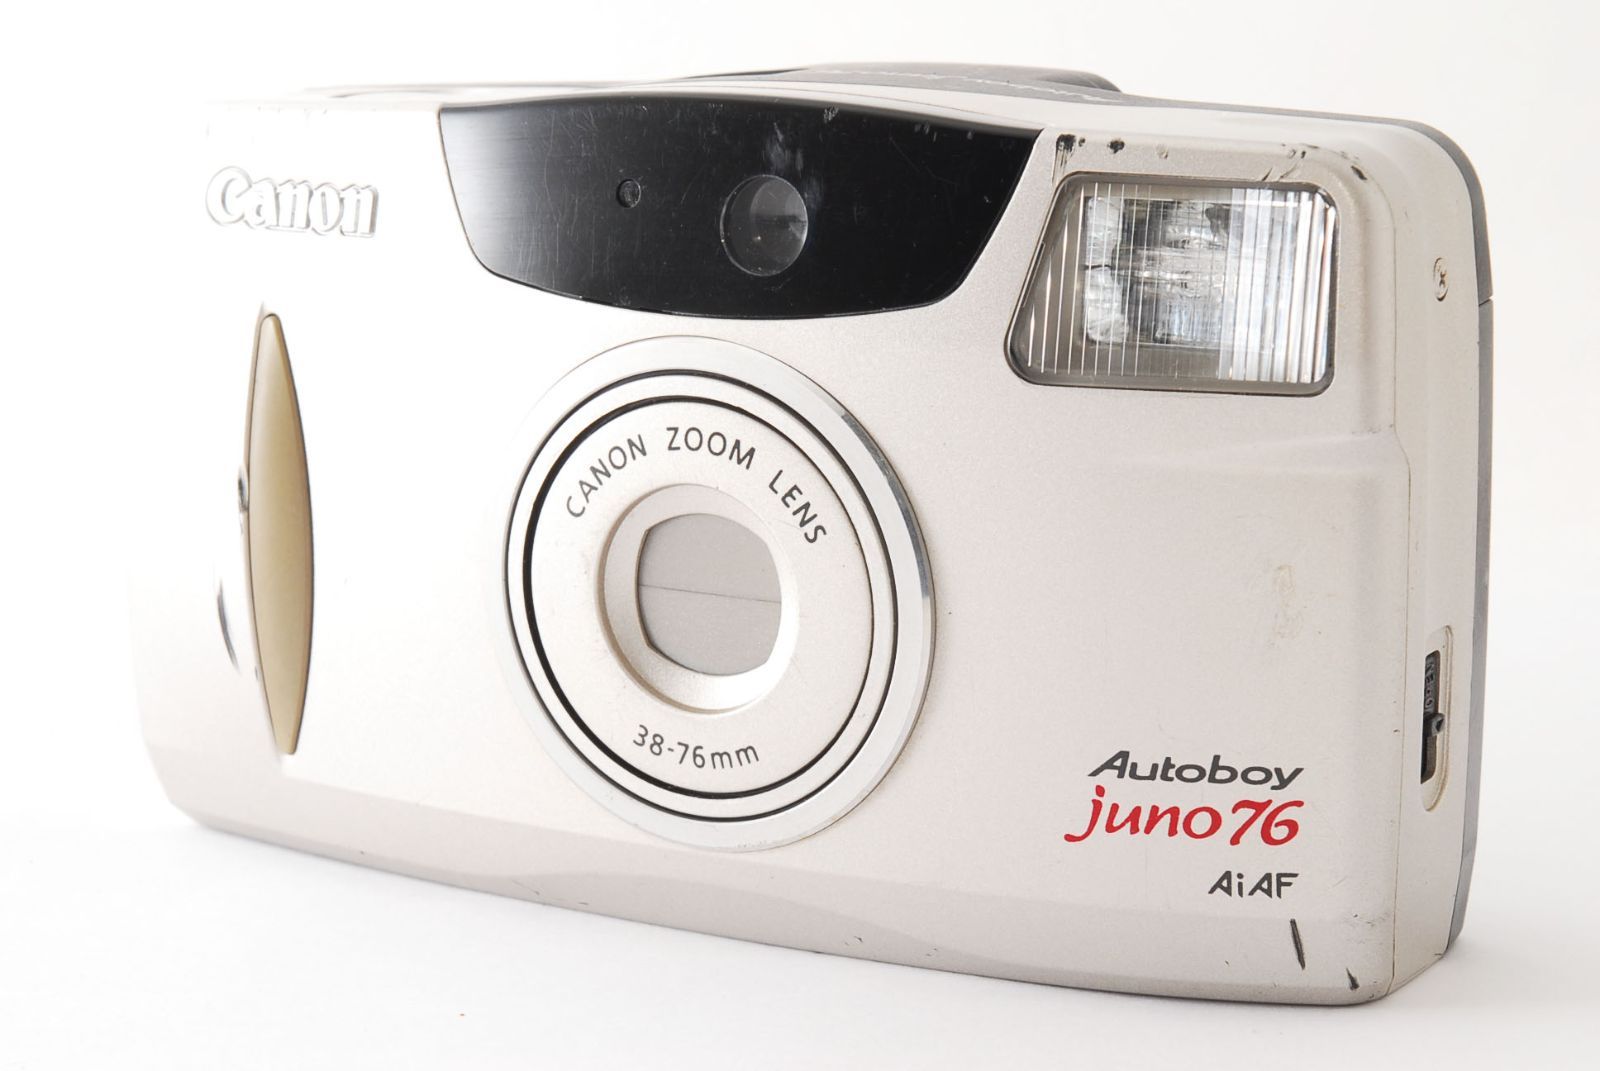 Canon Autoboy juno76 フィルムカメラ【動作確認済】065 - メルカリ